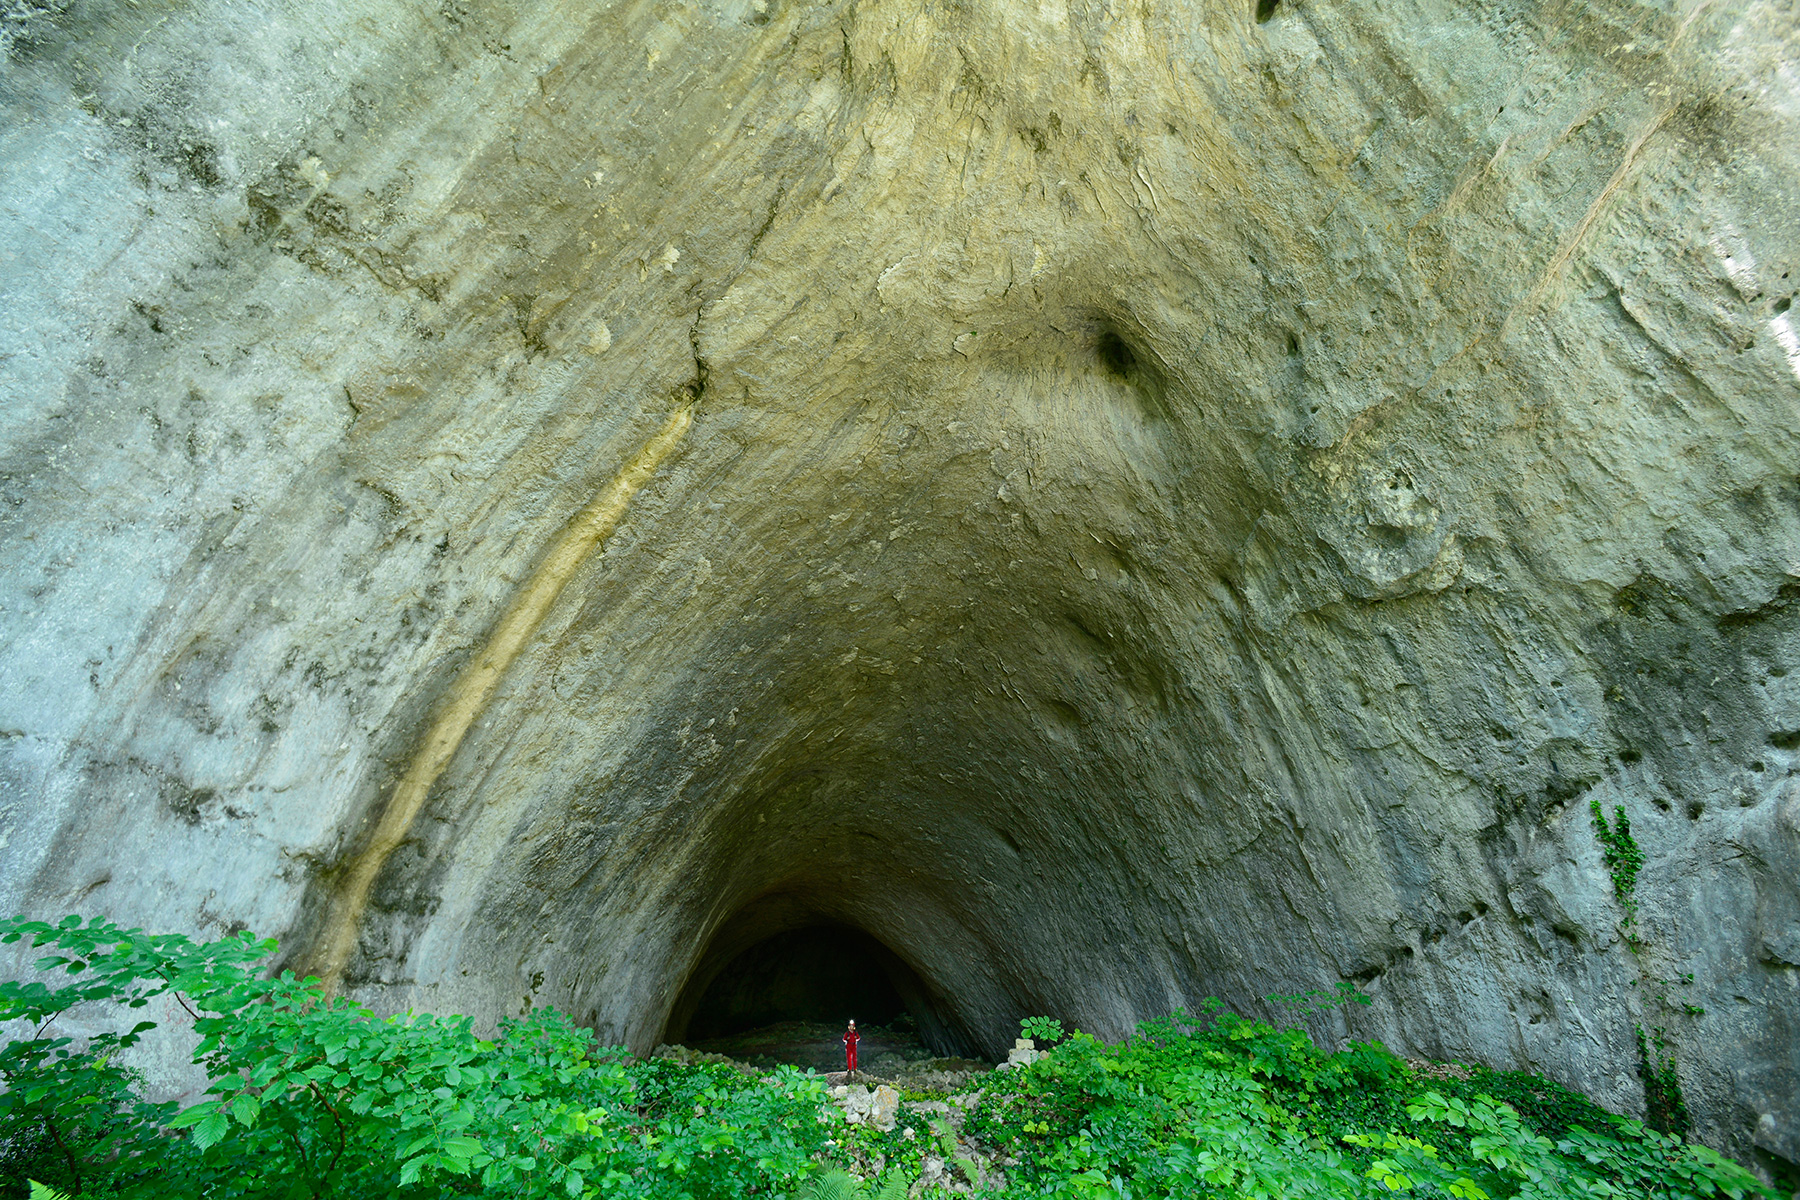 Ilgarini Cave (Kure Mountains National Park - Turquie) : porche d'entrée